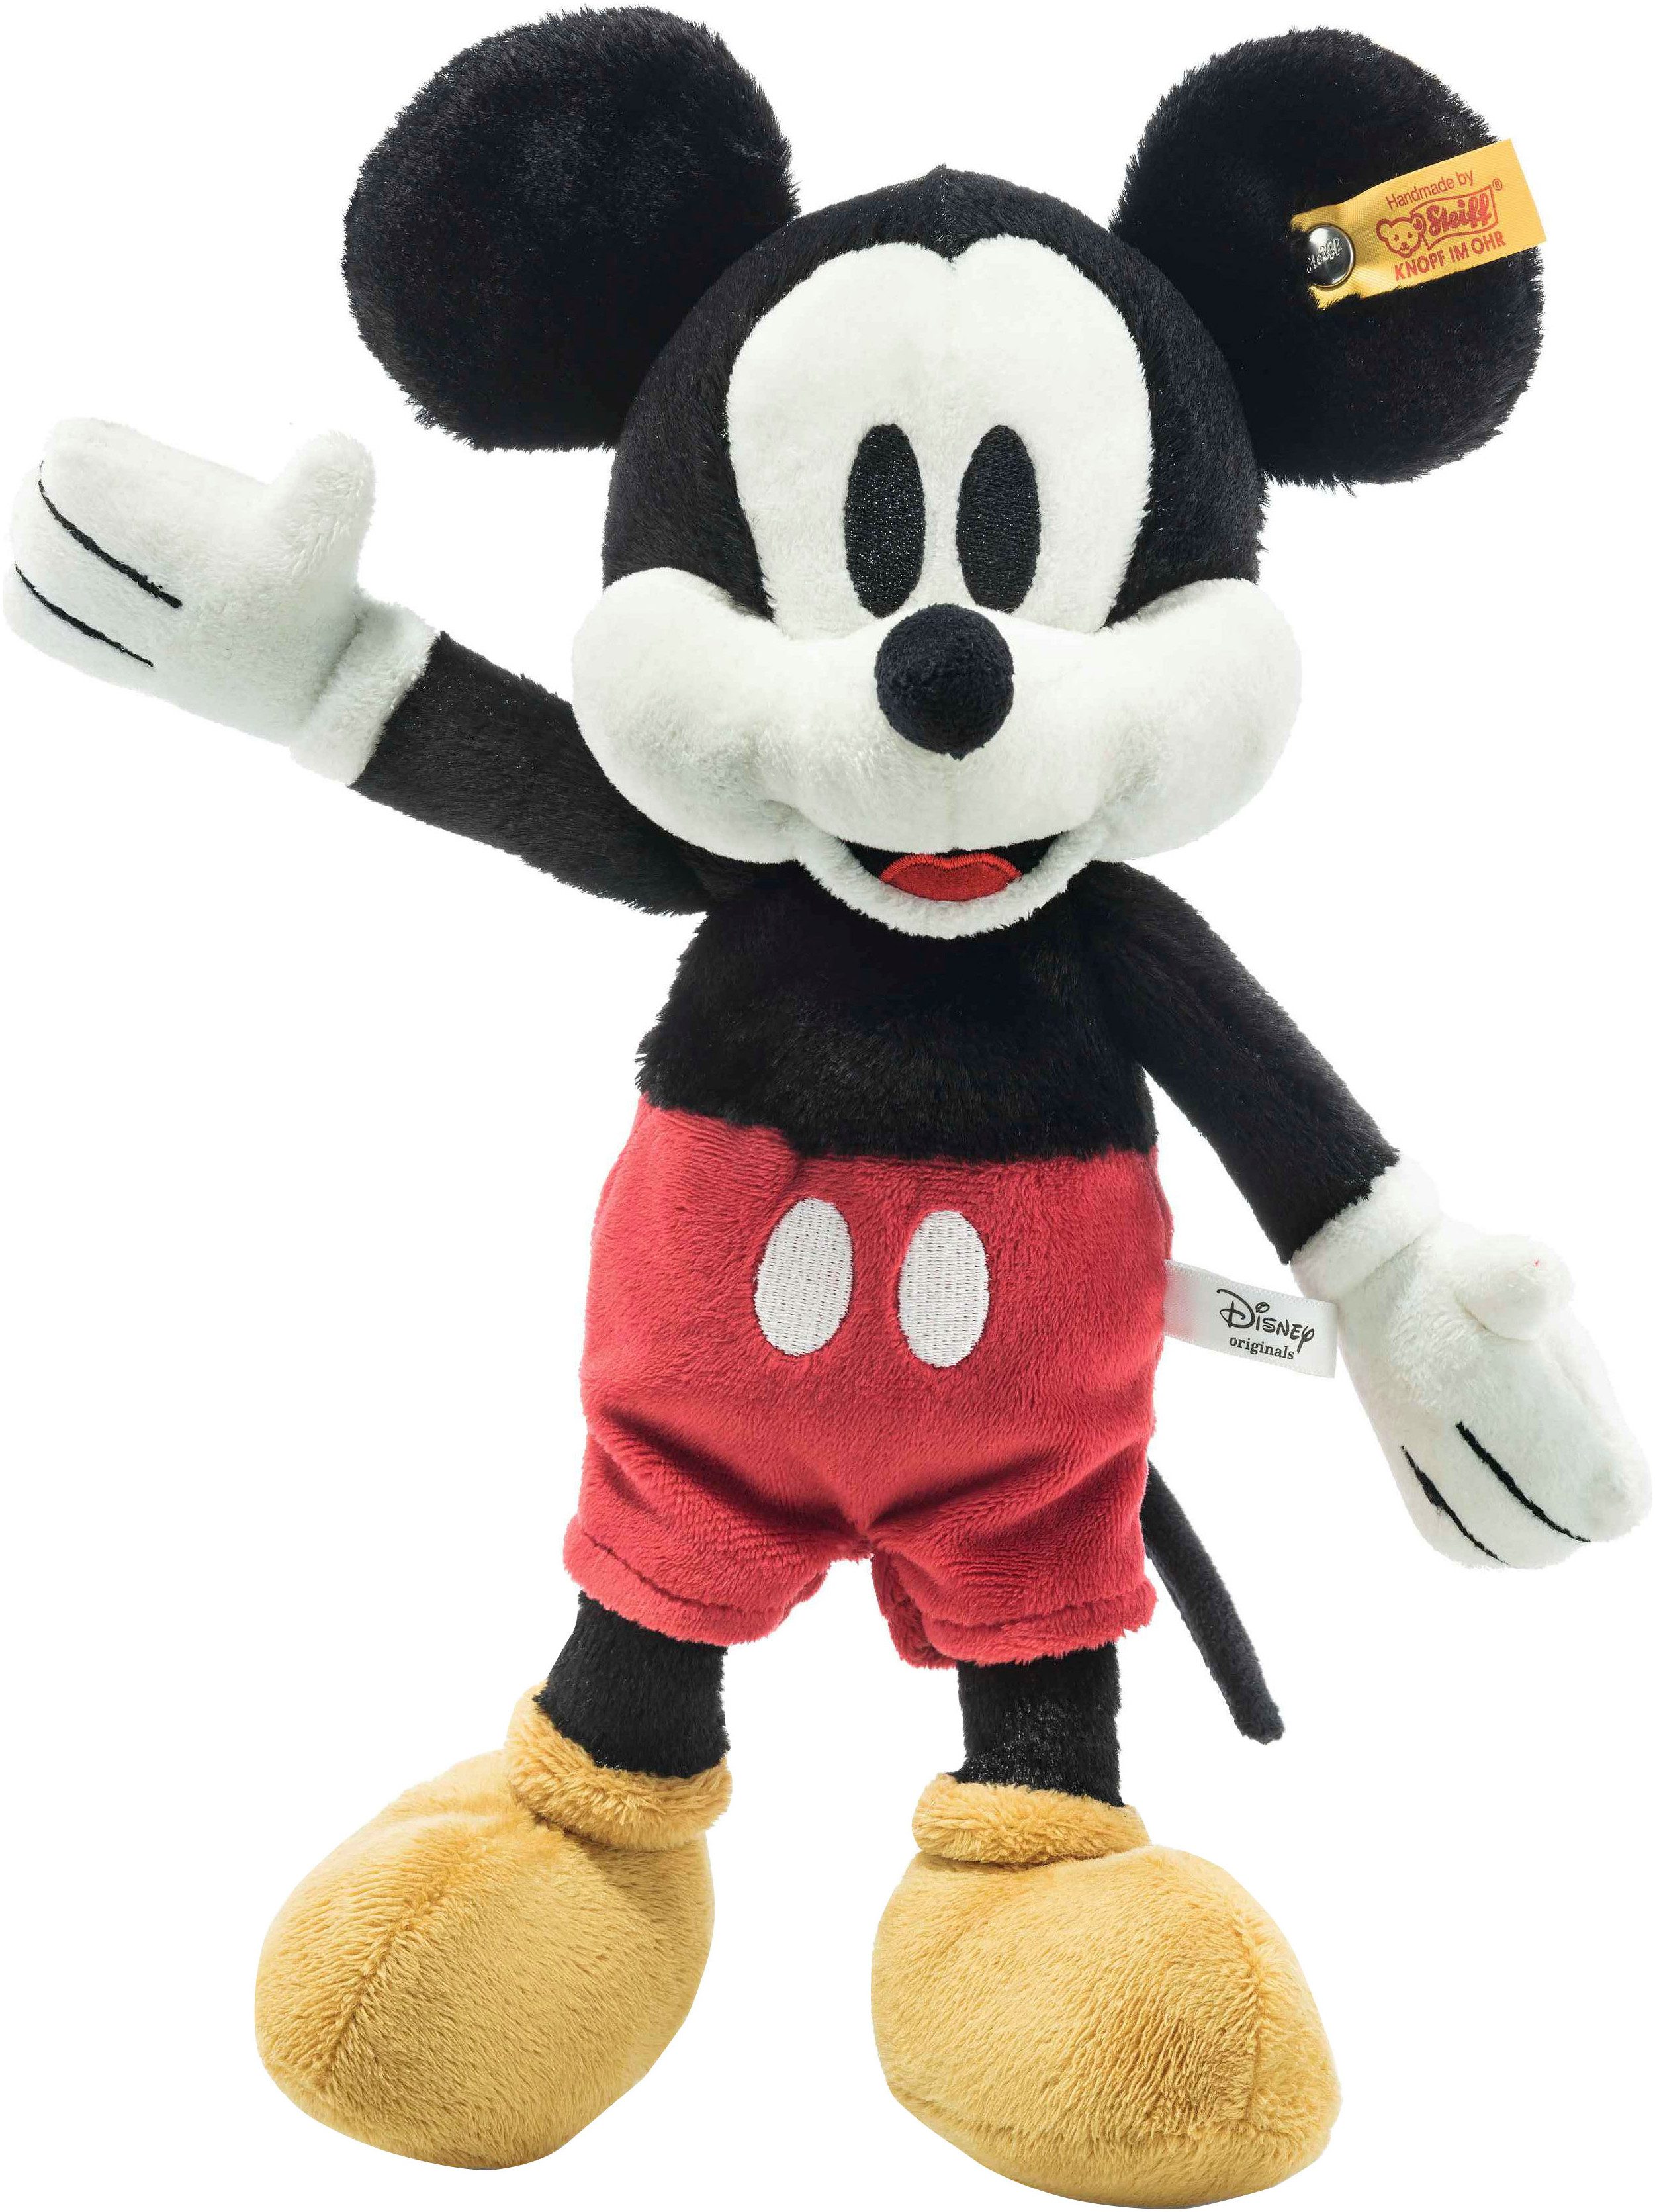 Steiff Kuscheltier Disney Originals, Micky Maus, 31 cm